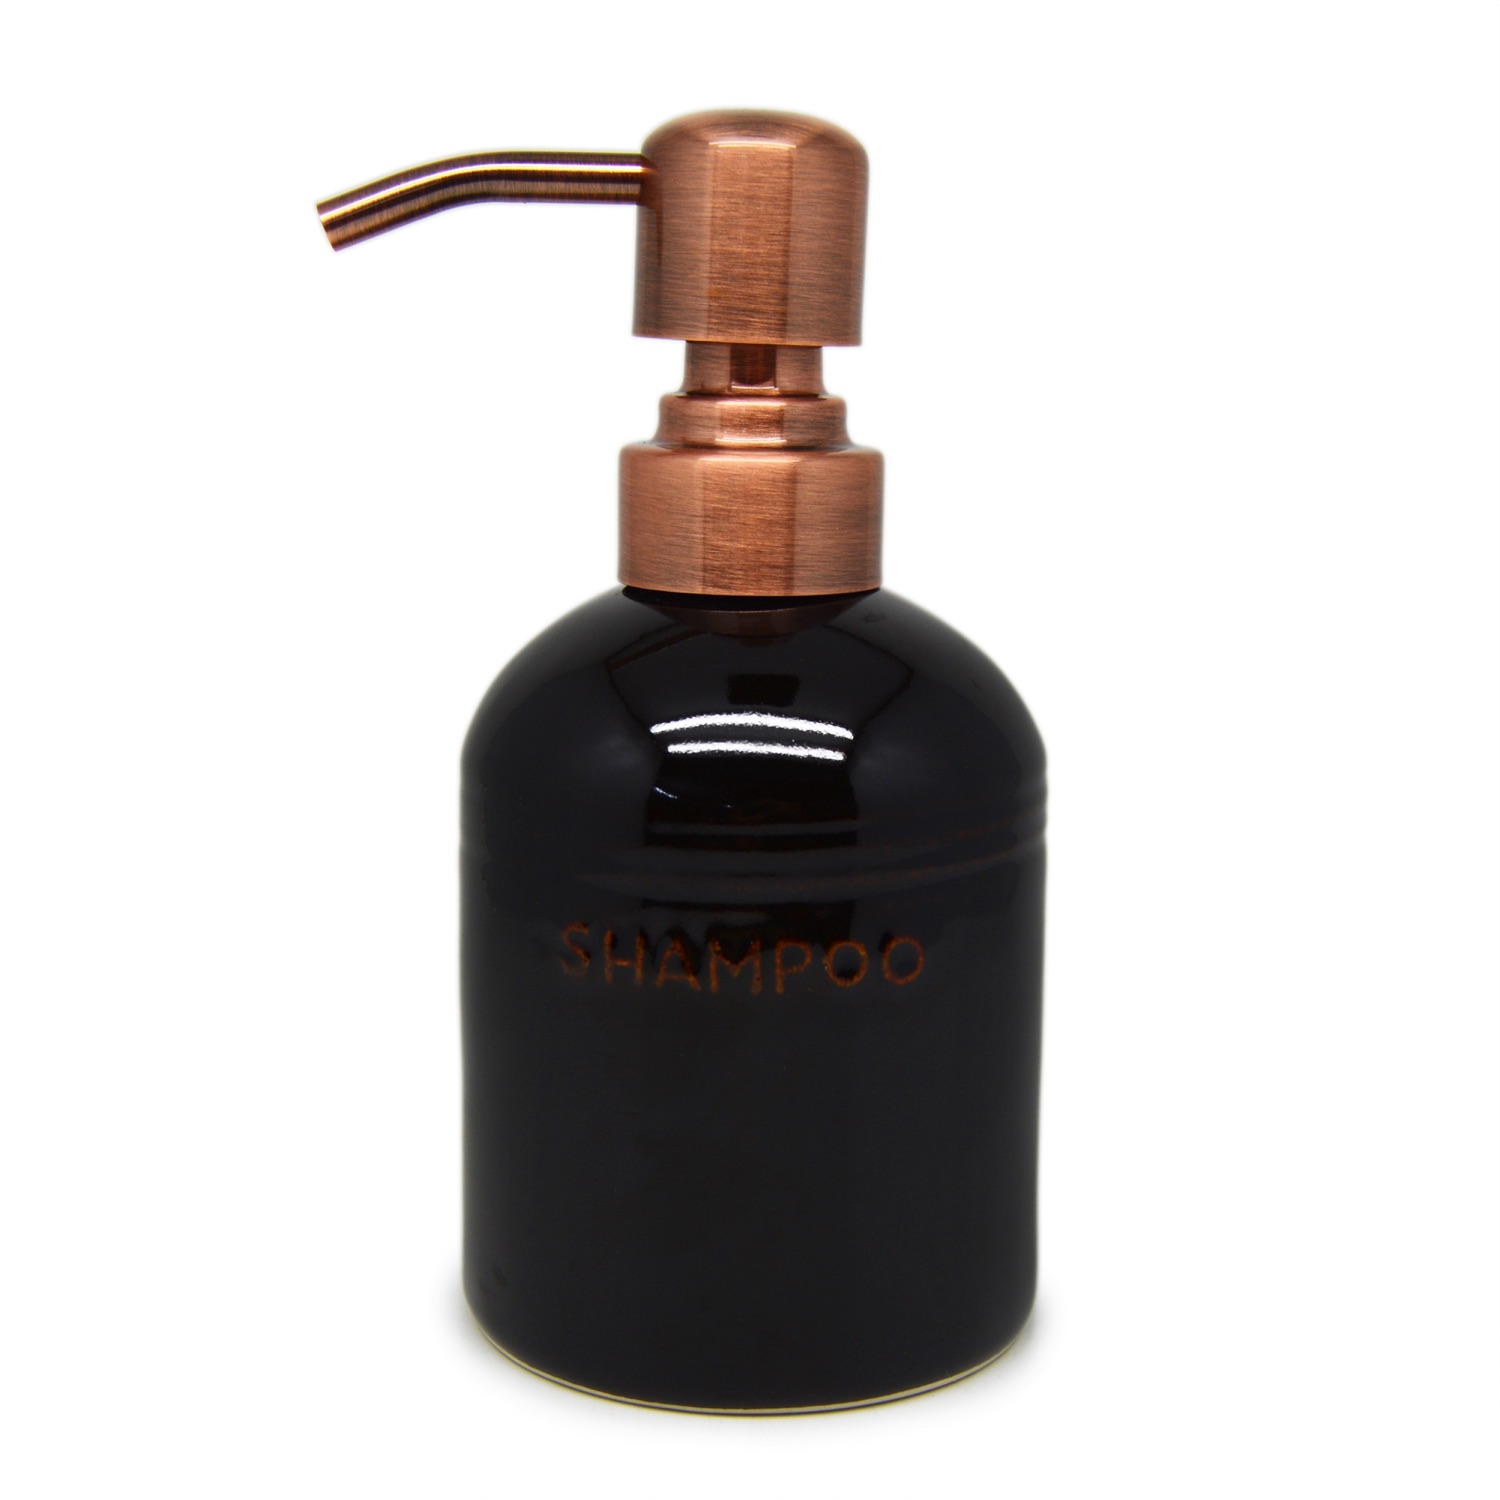 Liquid Dispenser S2 - Shampoo - Brass Plated Pump